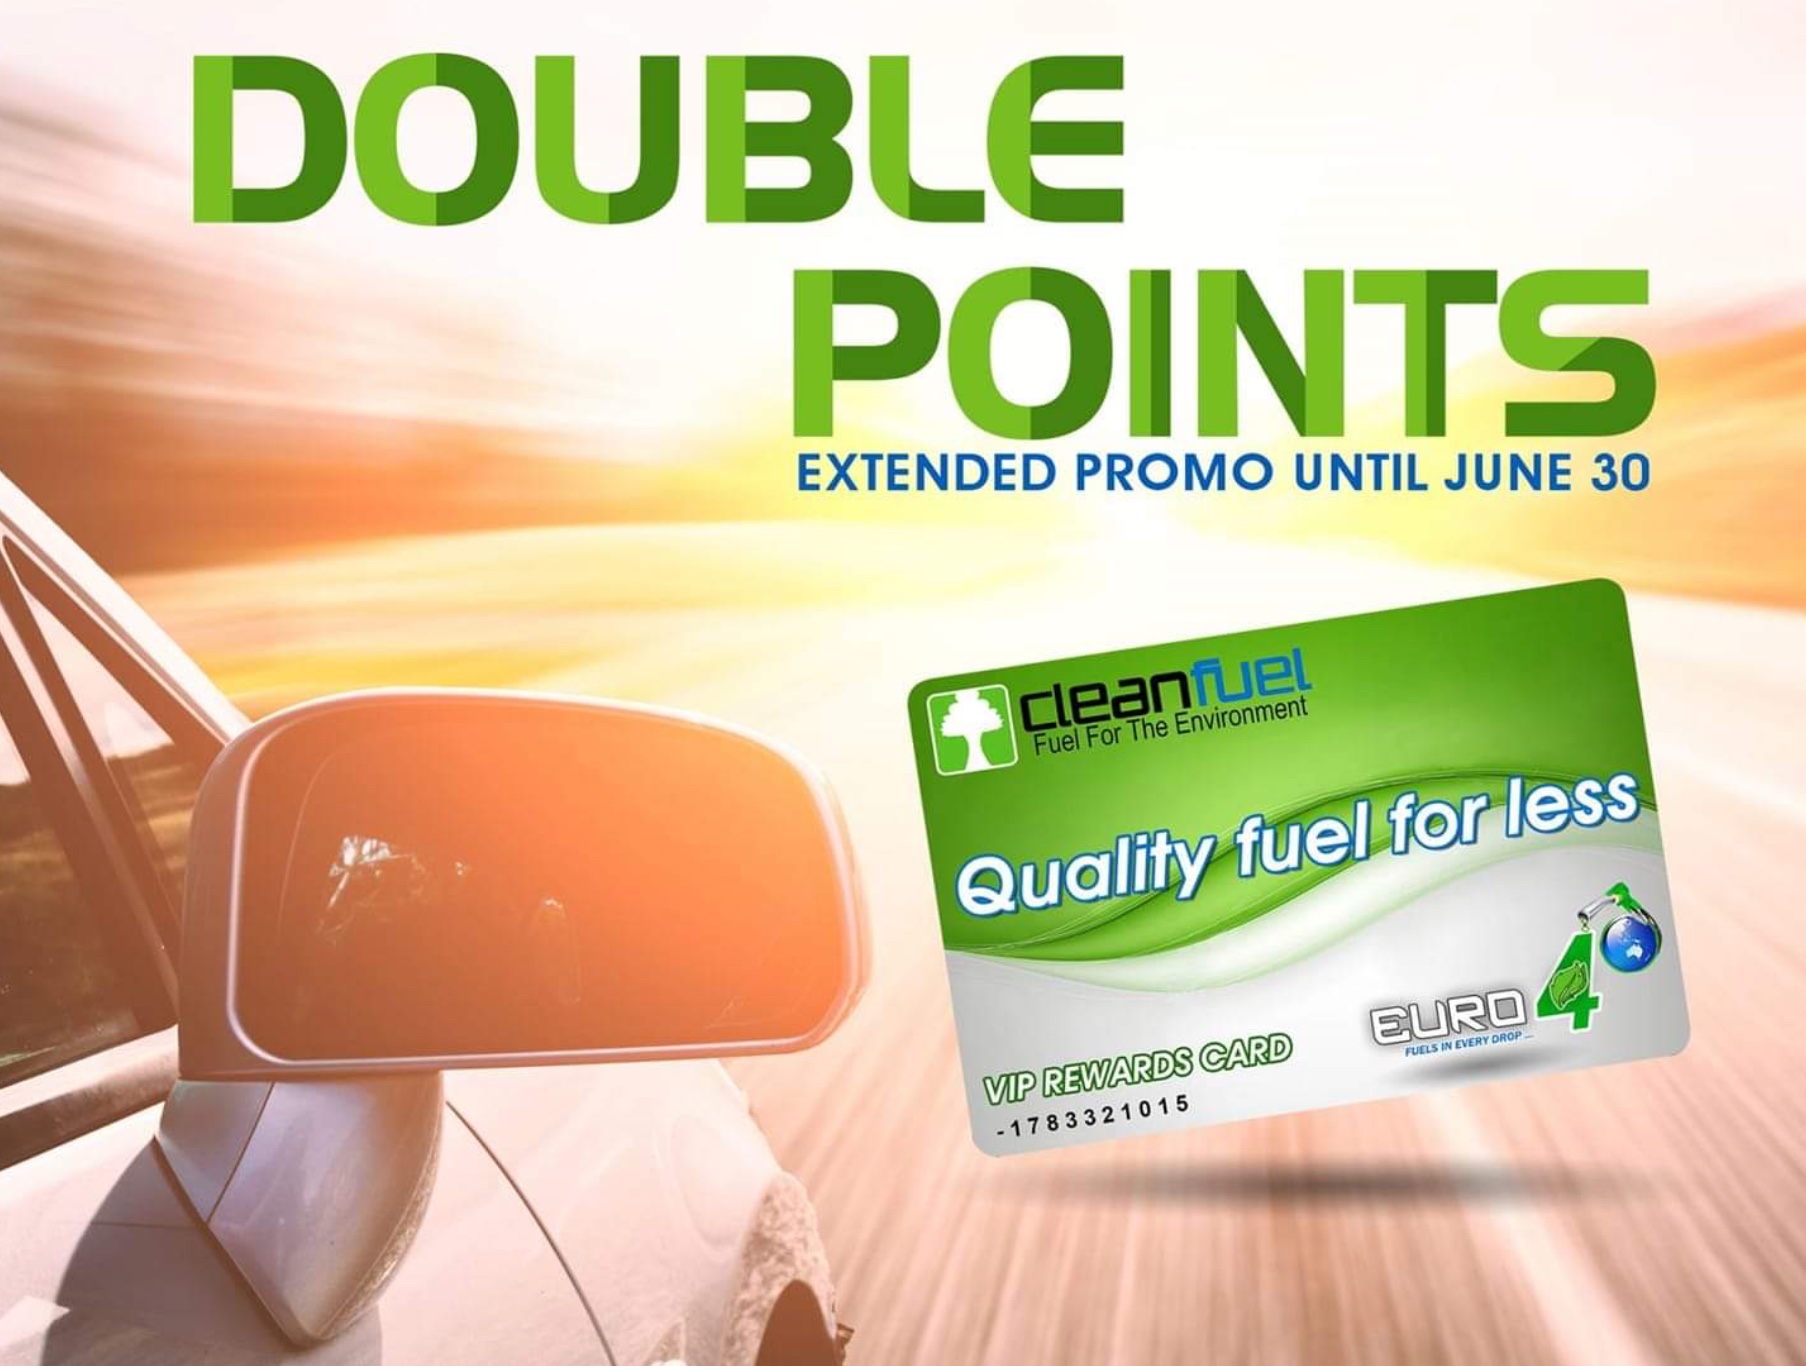 Cleanfuel extends Double Points promo until June 30